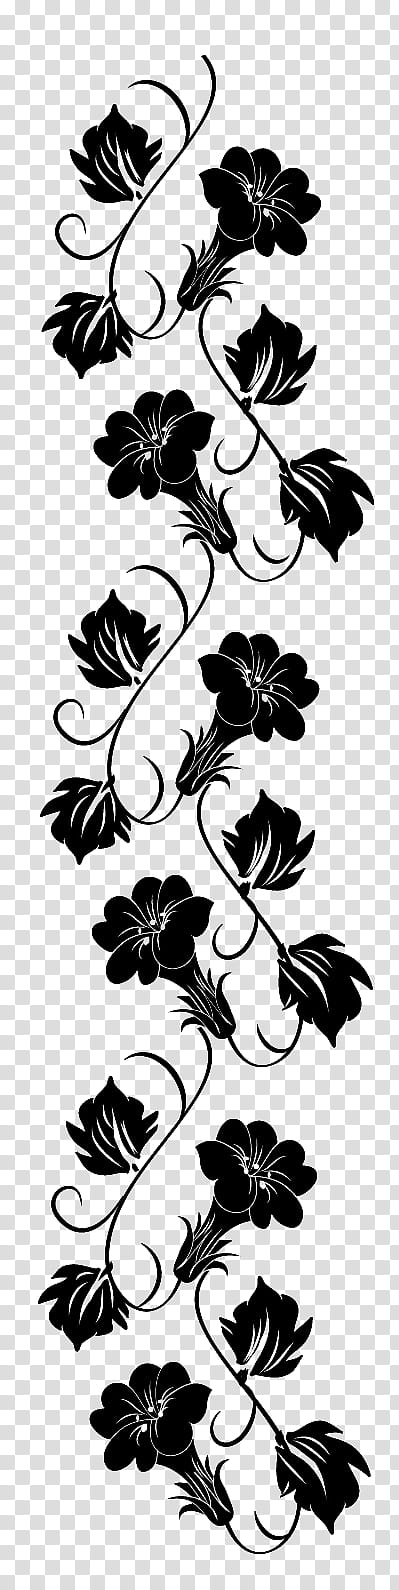 Flowers Brushes, black flower illustration transparent background PNG clipart